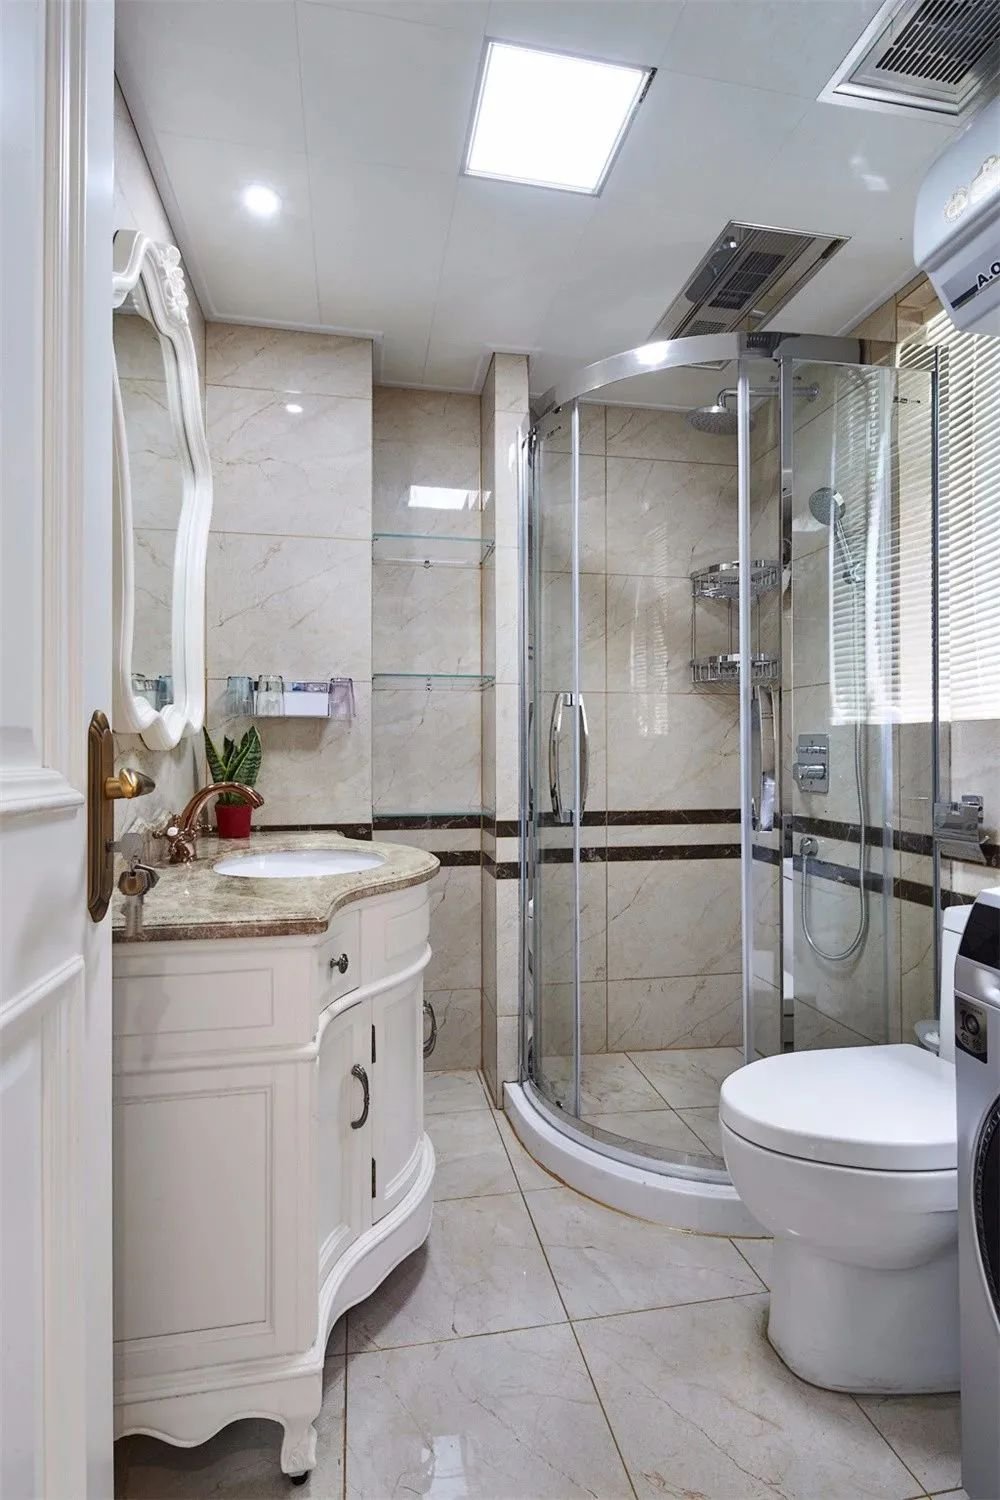 6款超全淋浴房设计改造你最中意哪一款